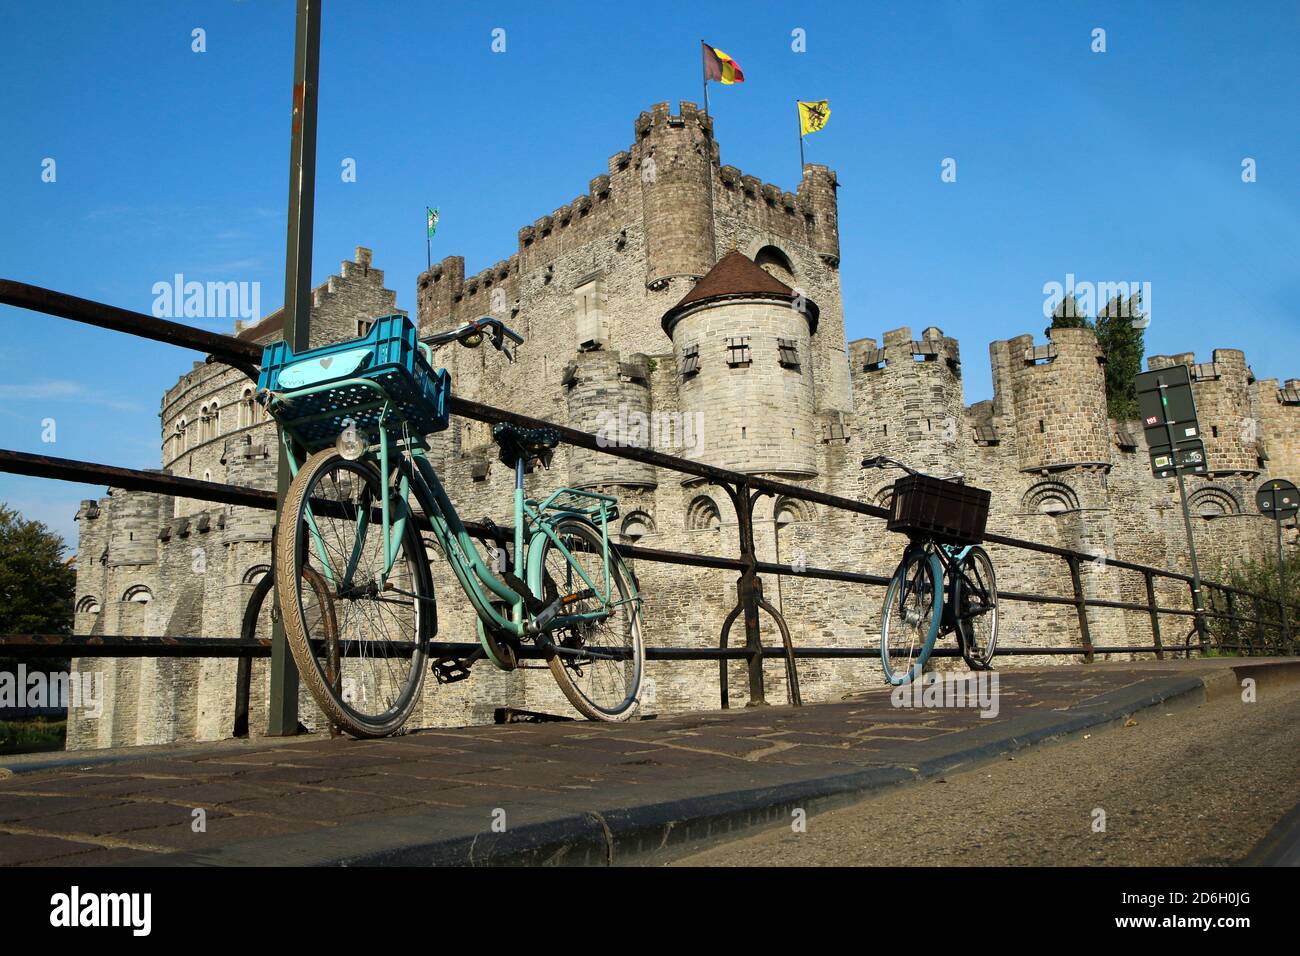 La photo de la vieille ville historique de Gand en Belgique. La belle et belle ville, vue pour les touristes. Le château avec un vélo traditionnel Banque D'Images